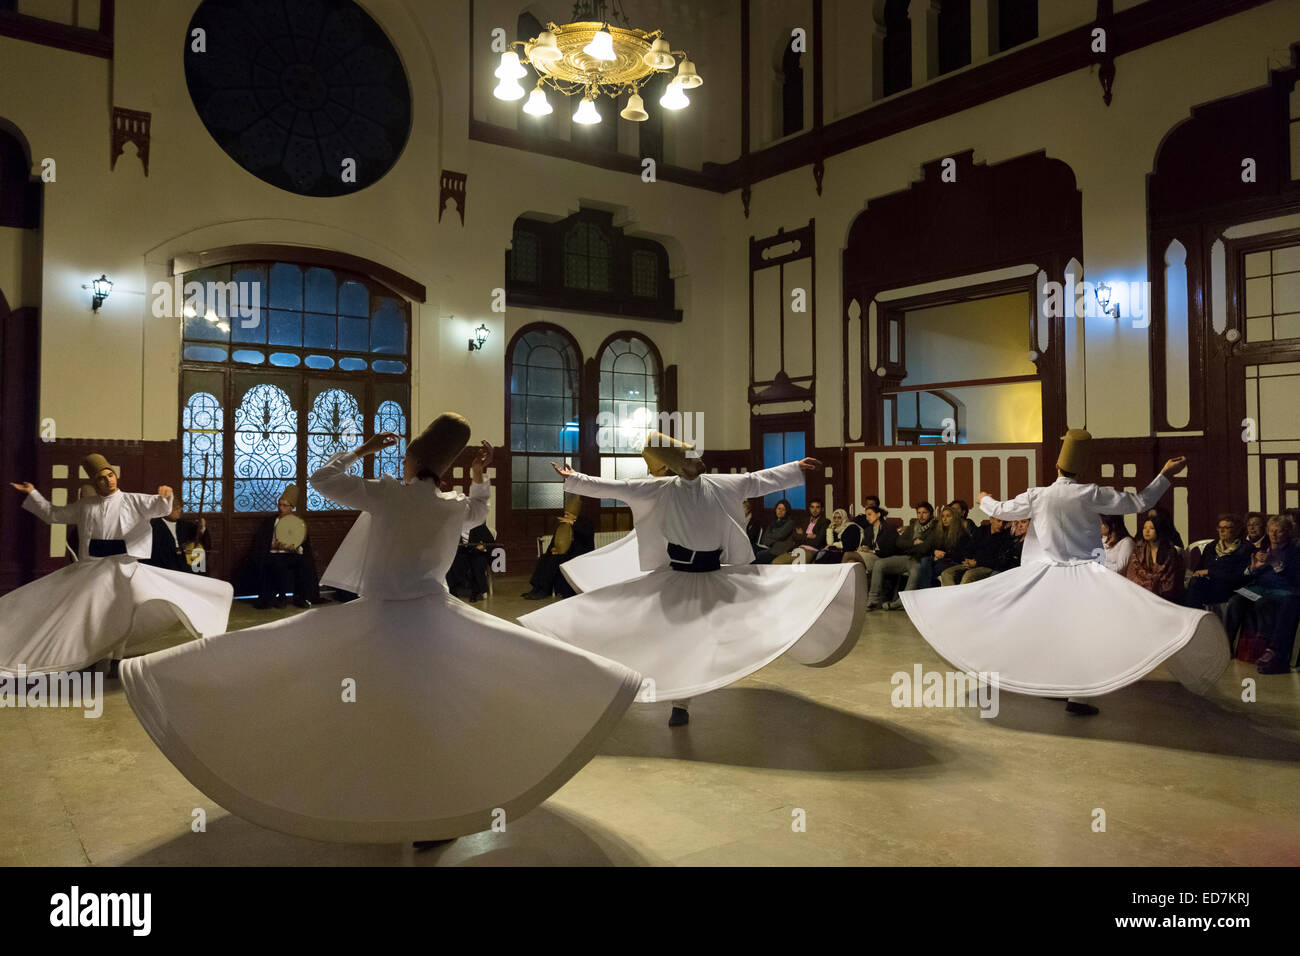 Touristen in tanzender Derwisch Ayin Musik Leistung - Mevlevi Sema - Zeremonie (tanzenden Derwische), Istanbul, Türkei Stockfoto